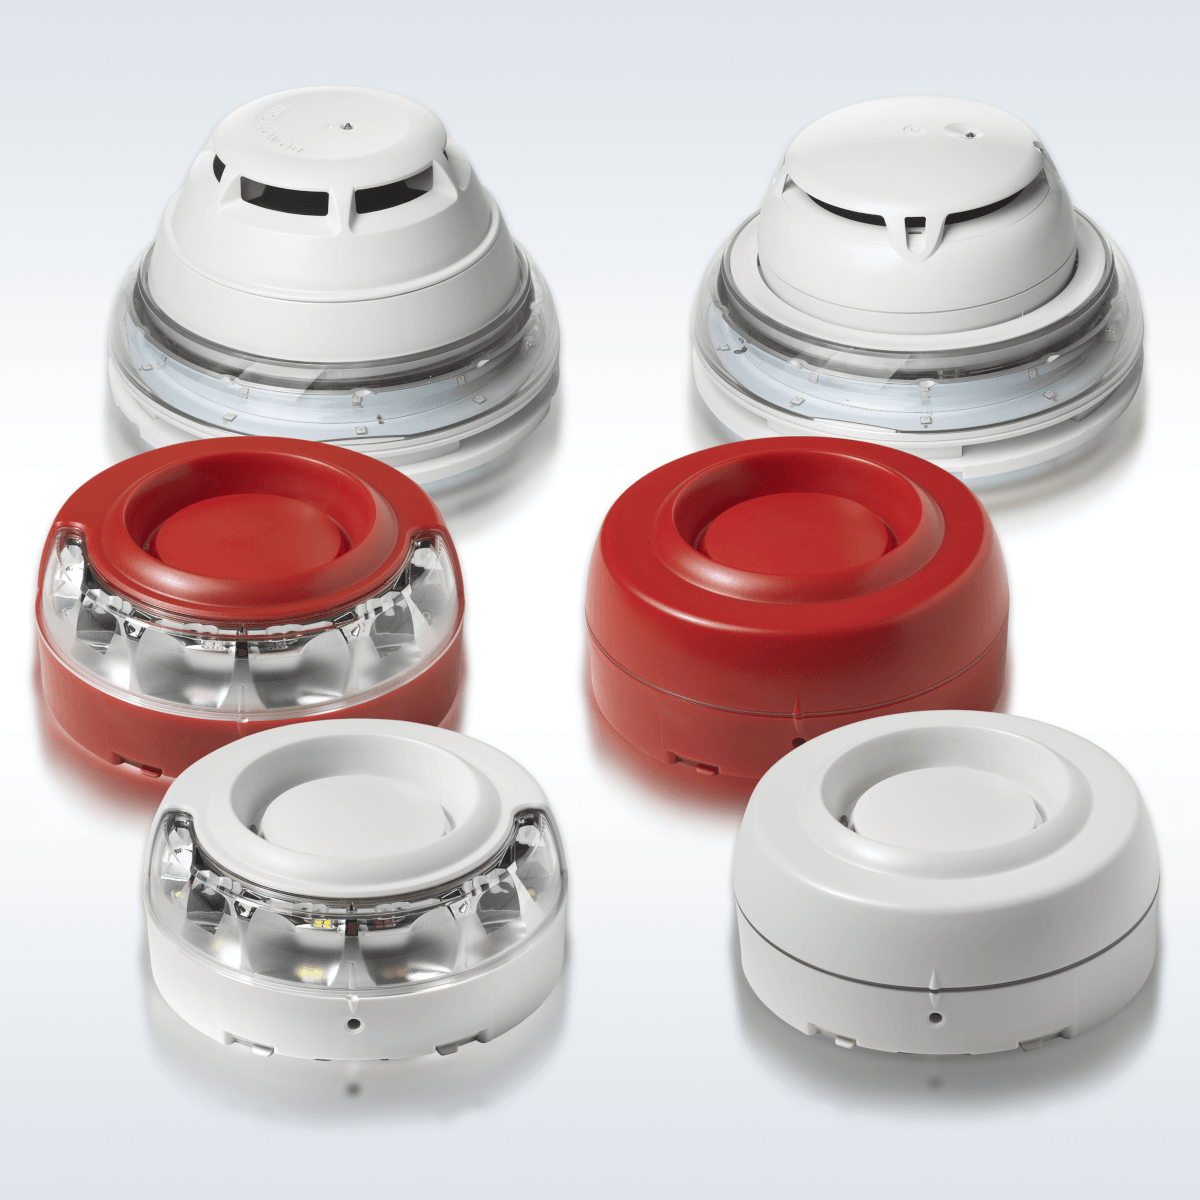 download red flashing on smoke detector